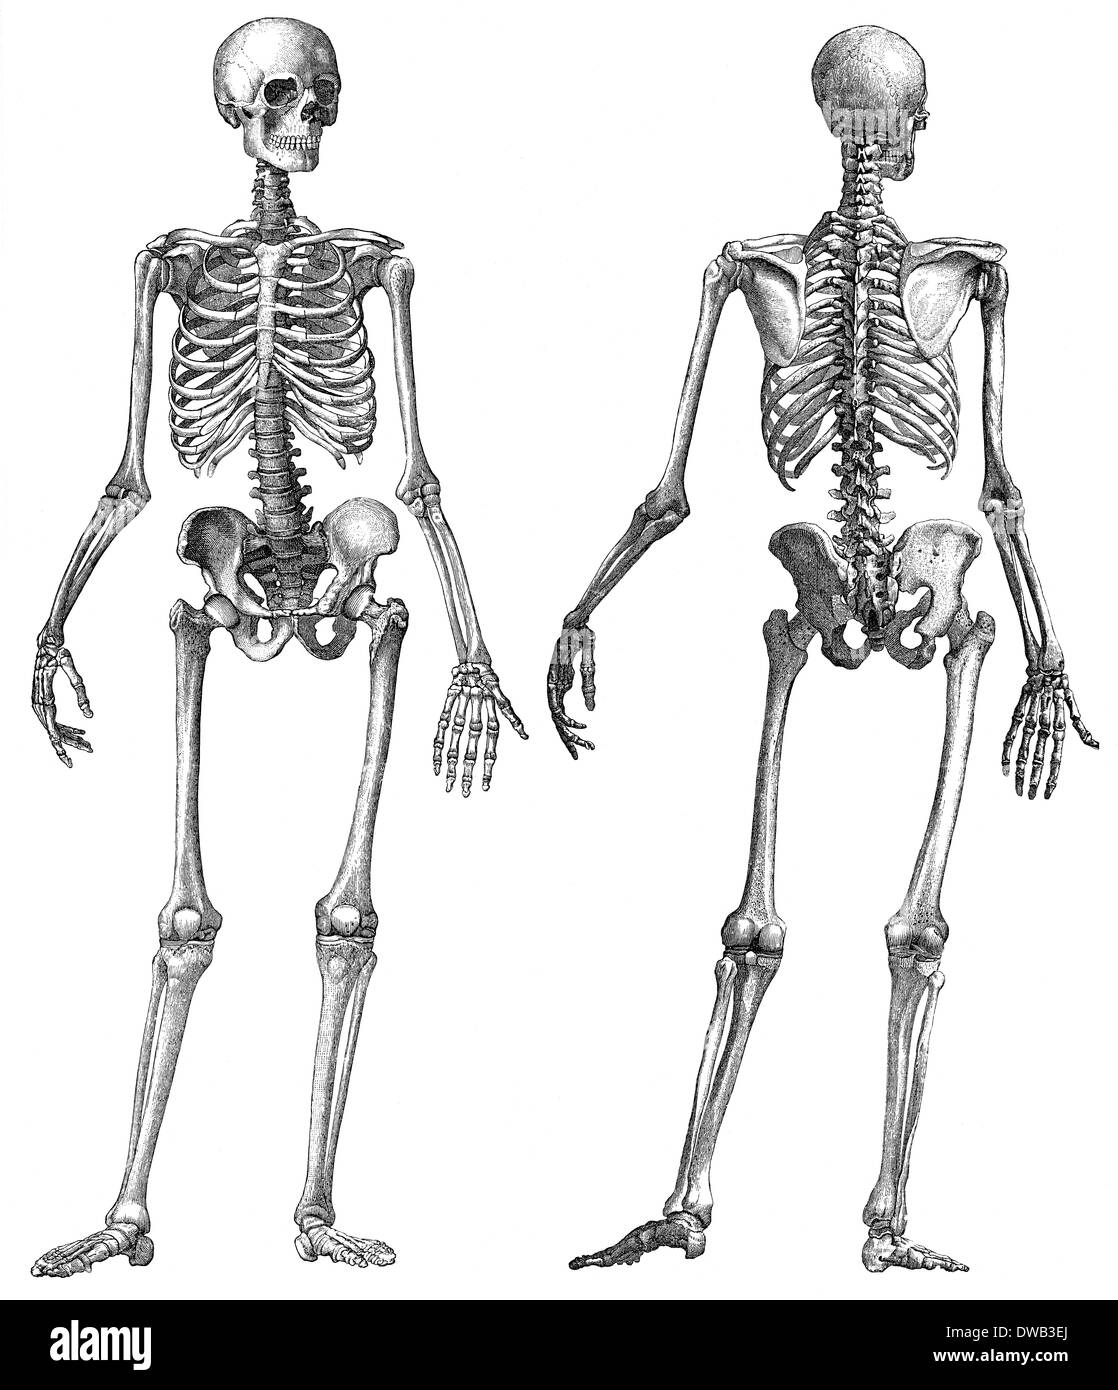 Squelette humain, illustration anatomique, 19e siècle Banque D'Images